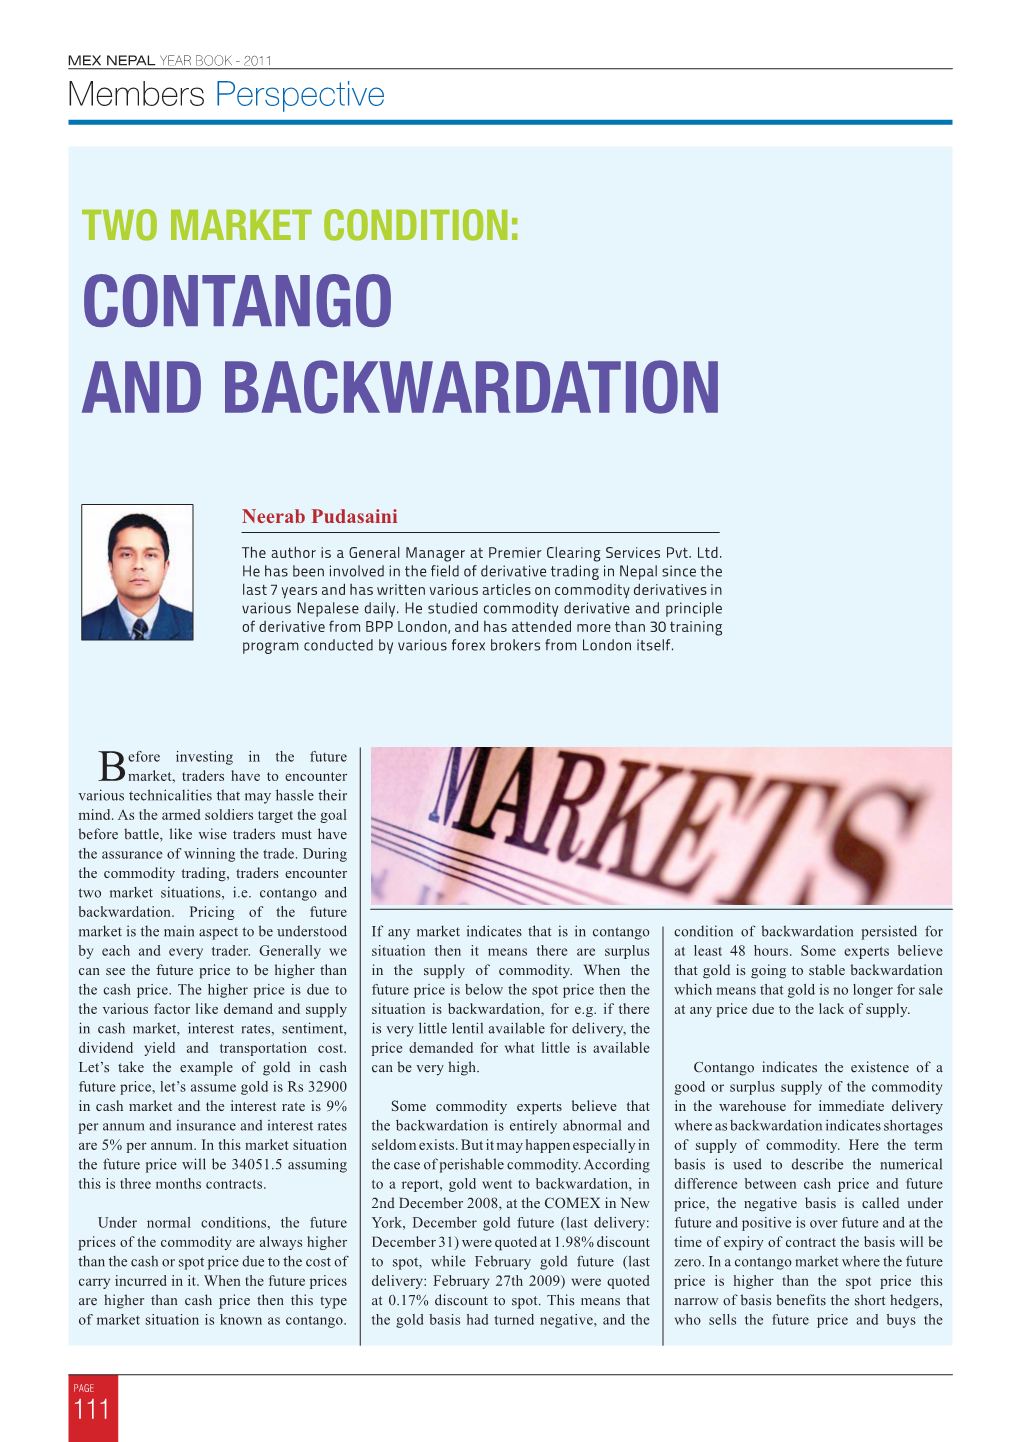 Contango and Backwardation